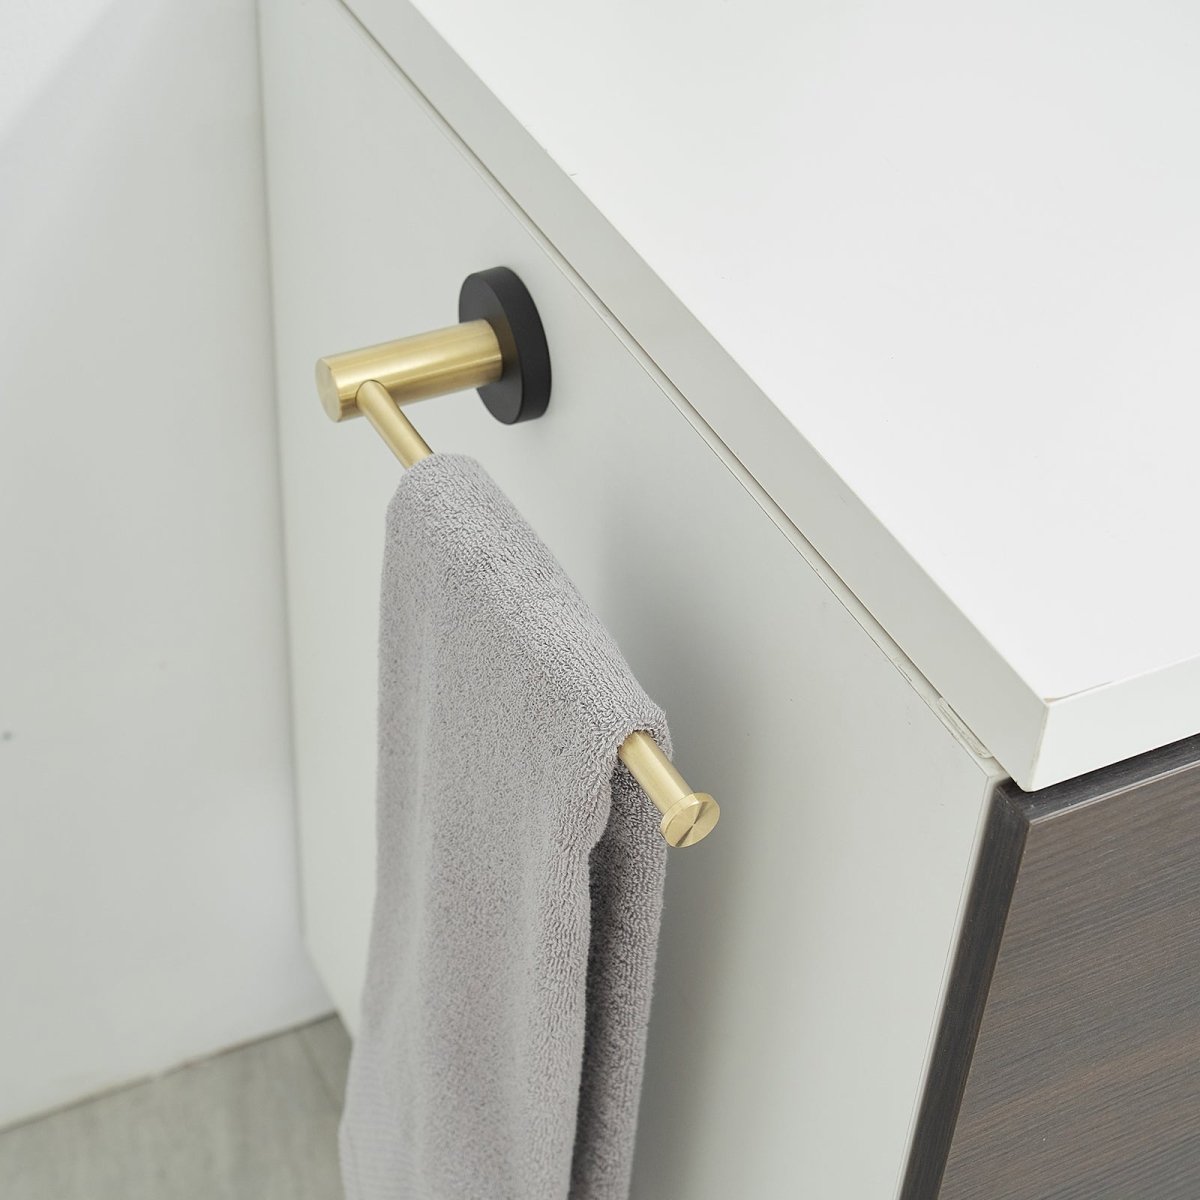 5PCS Towel Bar Toilet Paper Holder Towel Hook Set Black Gold - buyfaucet.com